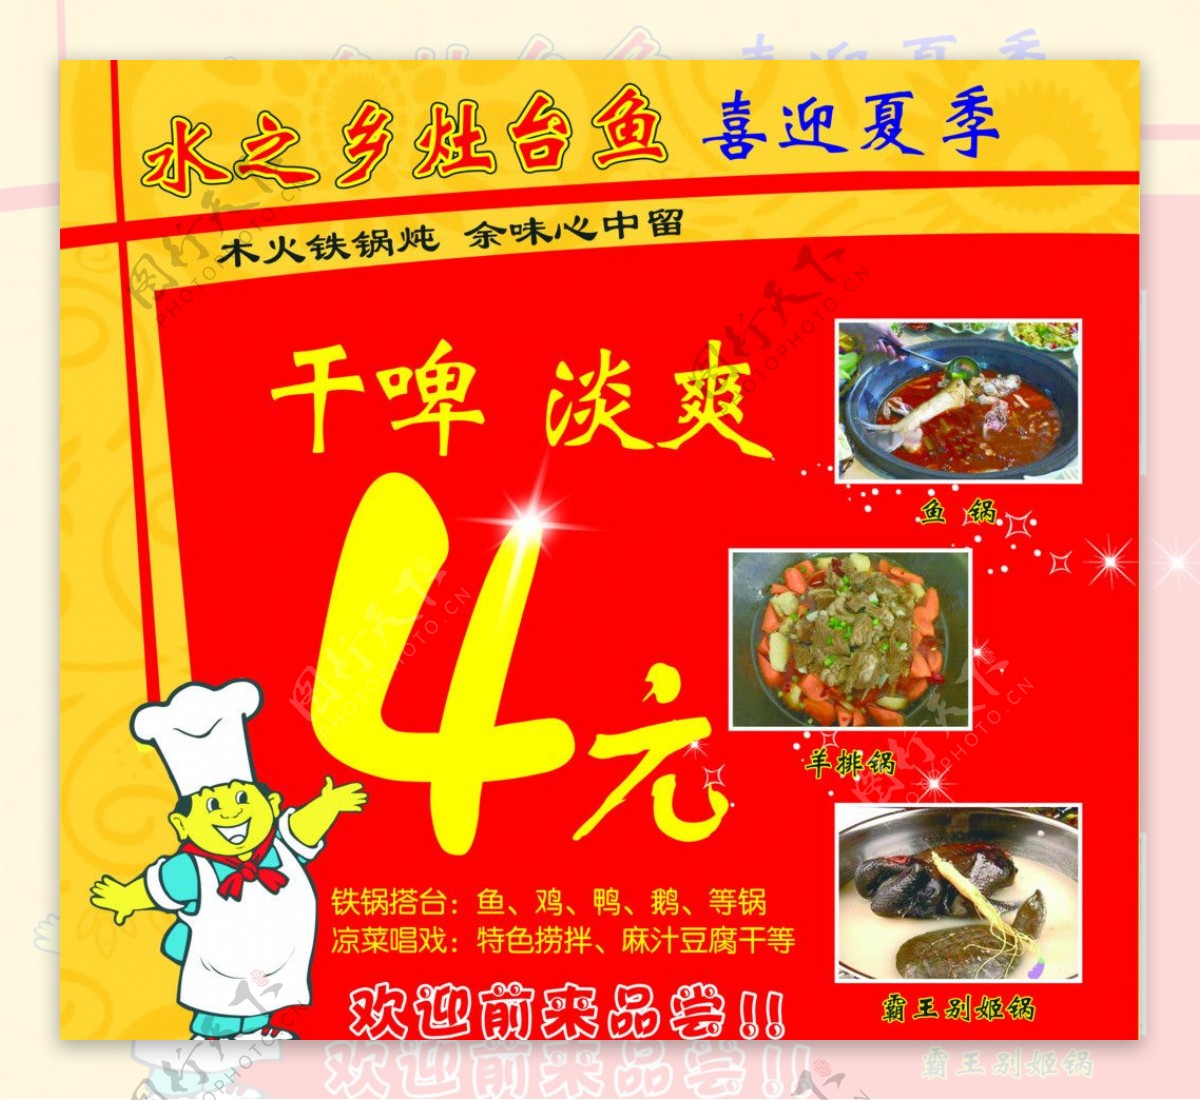 灶台鱼铁锅搭台凉菜唱戏图片